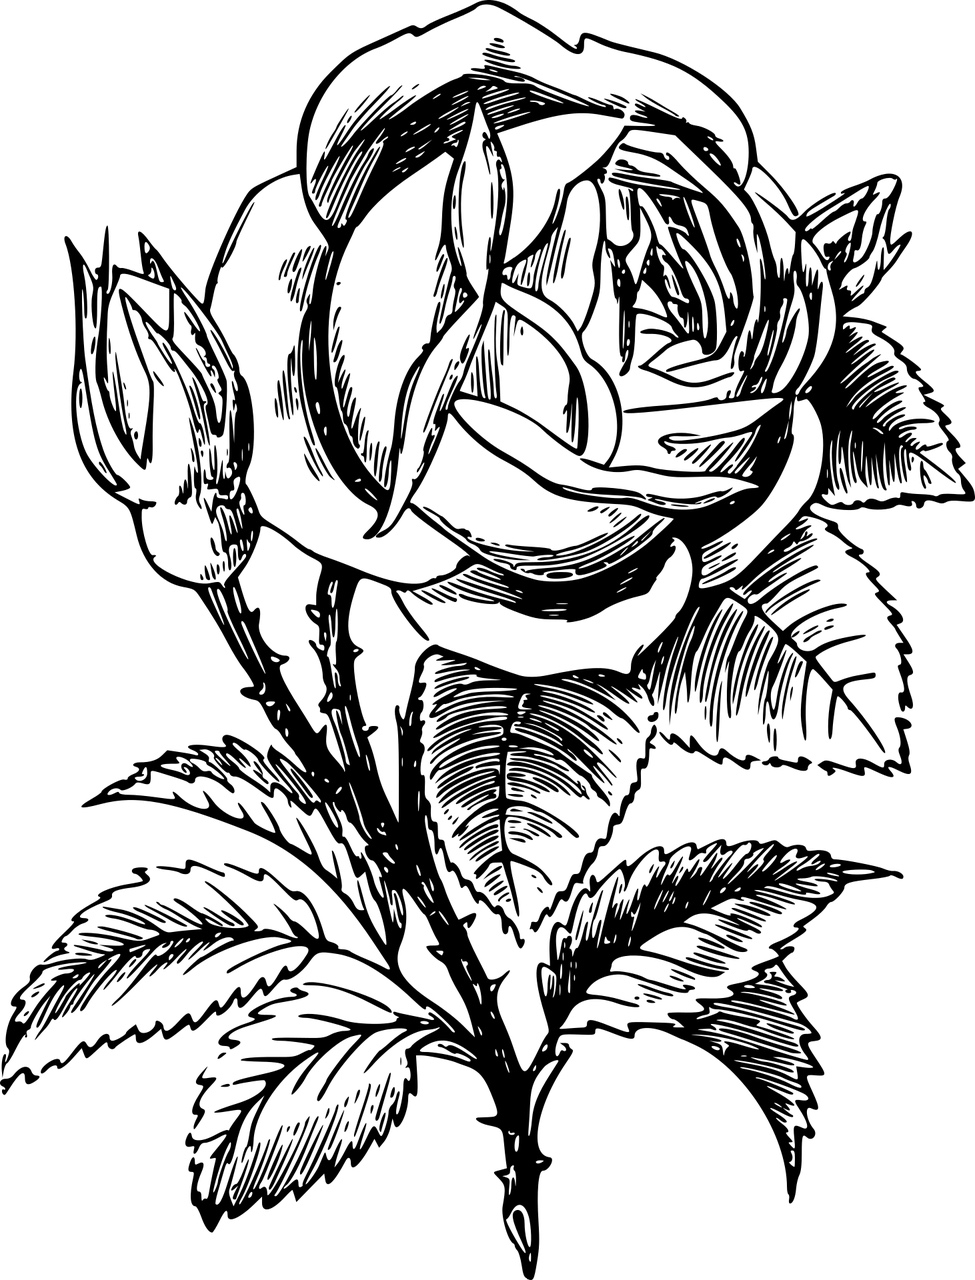 Roses in Flower